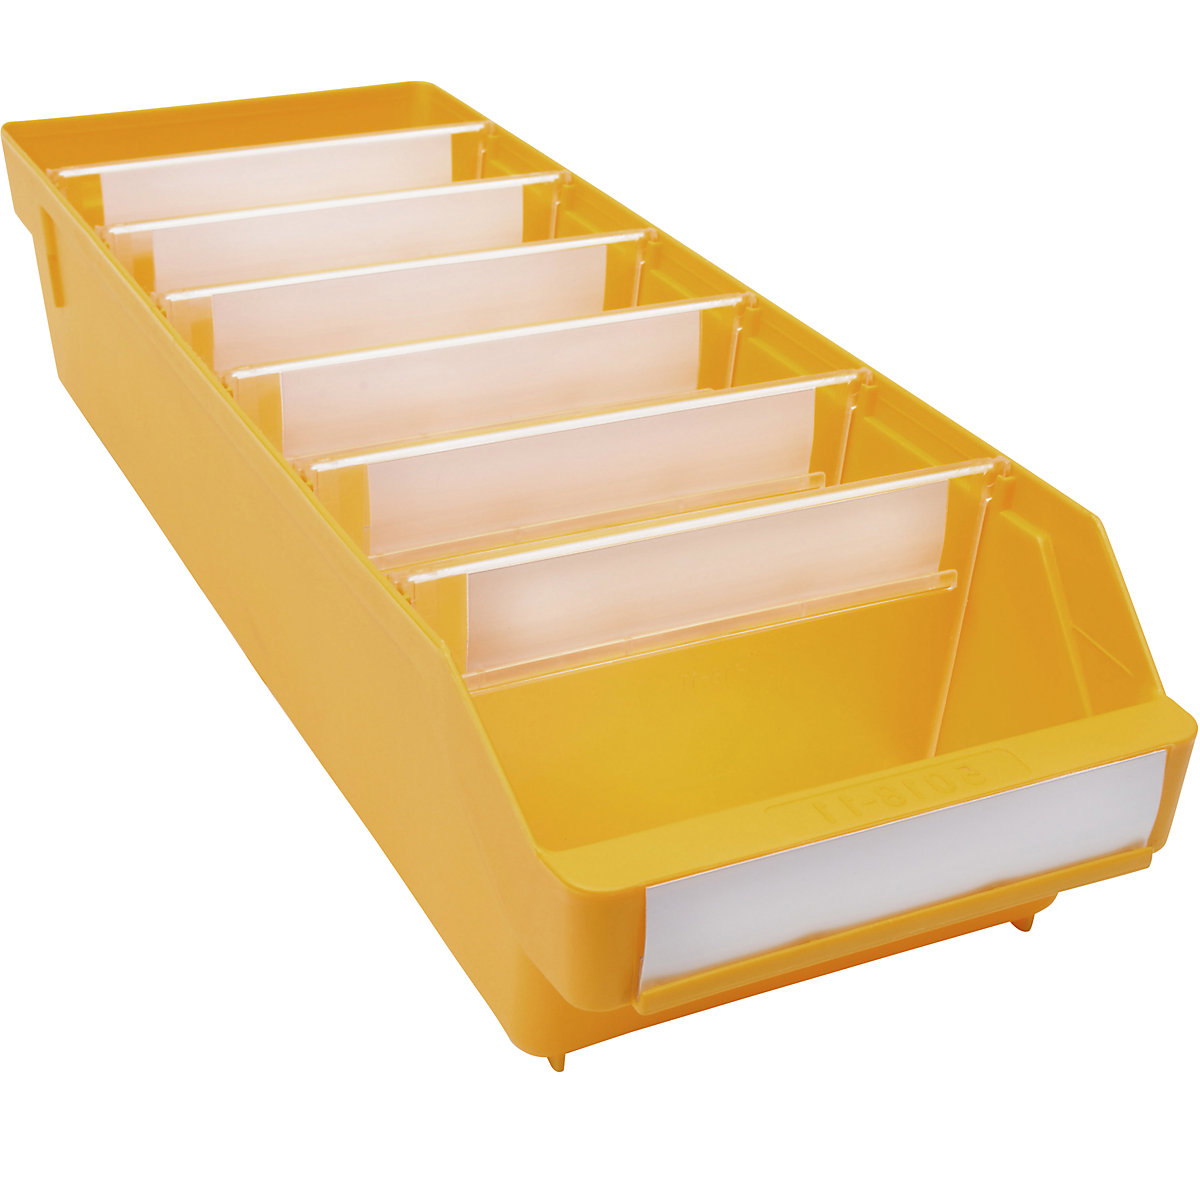 Cassettina per scaffali in polipropilene ad alta resistenza – STEMO, giallo, lungh. x largh. x alt. 500 x 180 x 110 mm, conf. da 20 pezzi-8